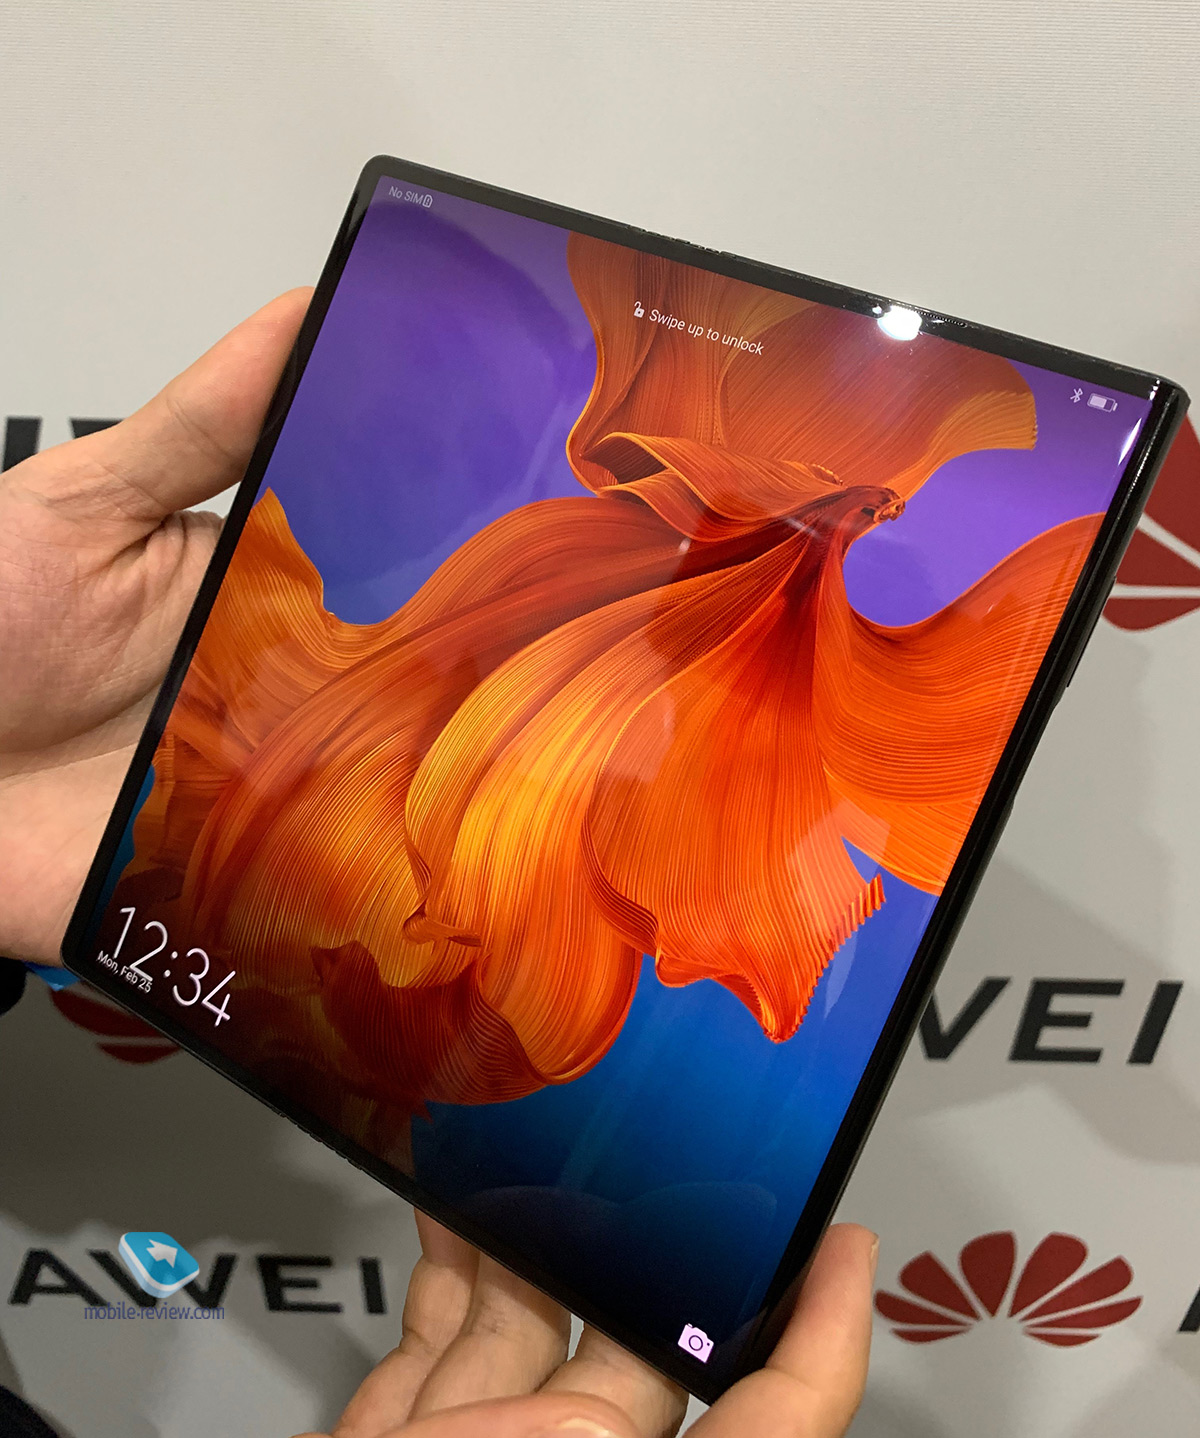 MWC 2019 - разговоры про Huawei, значки у Xiaomi, будущее Nokia